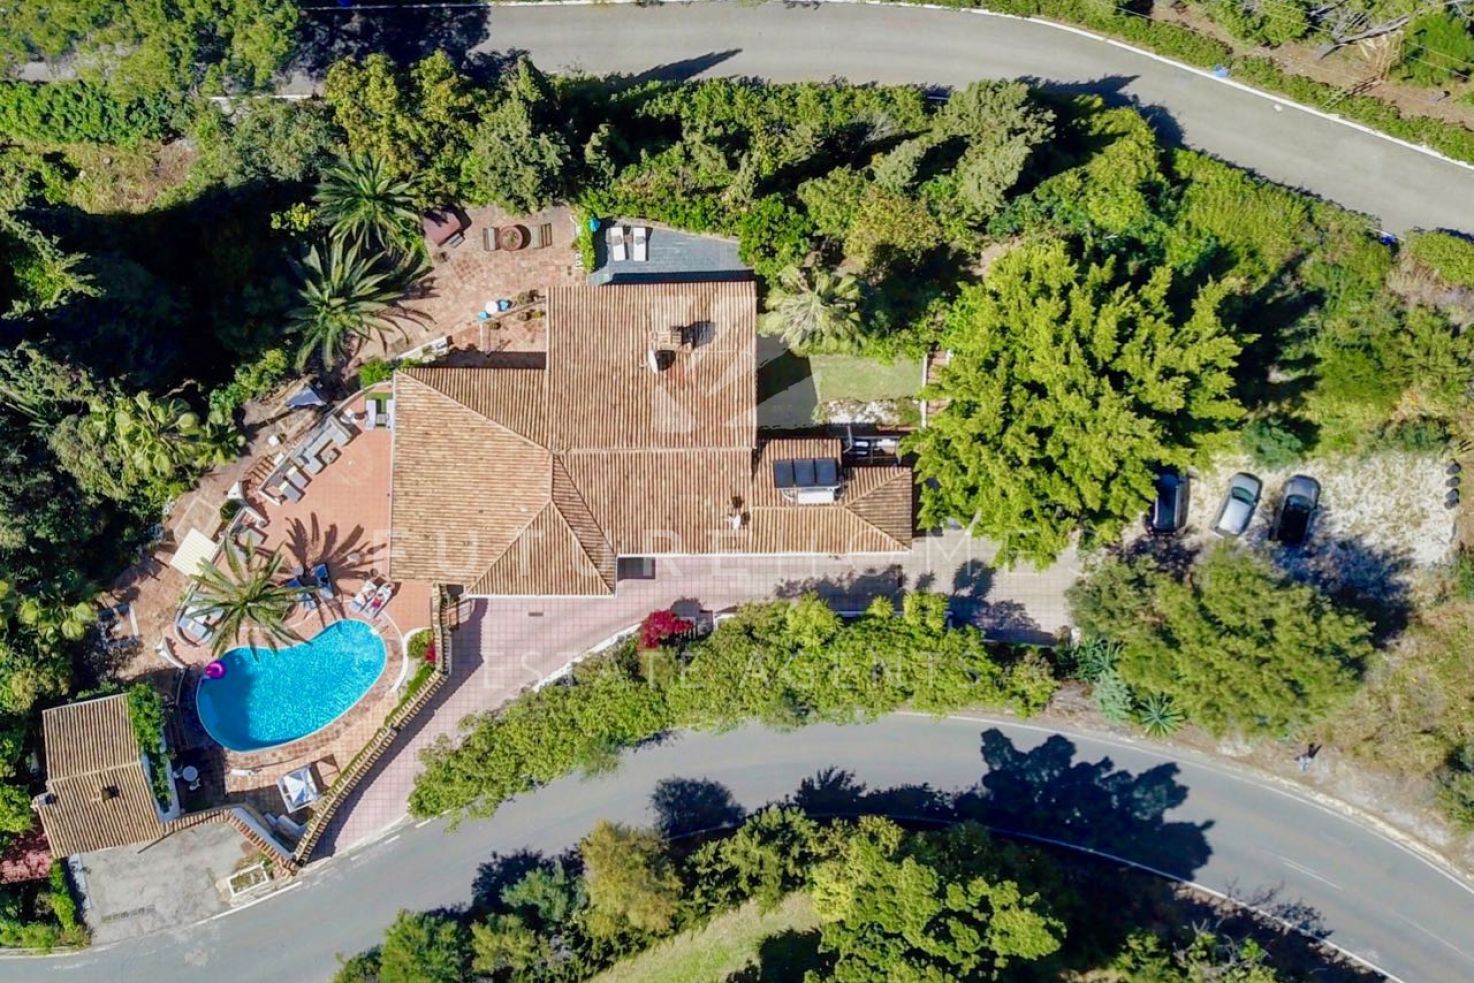 Preciosa villa independiente de estilo andaluz a solo tres minutos de Puerto Banús, Marbella